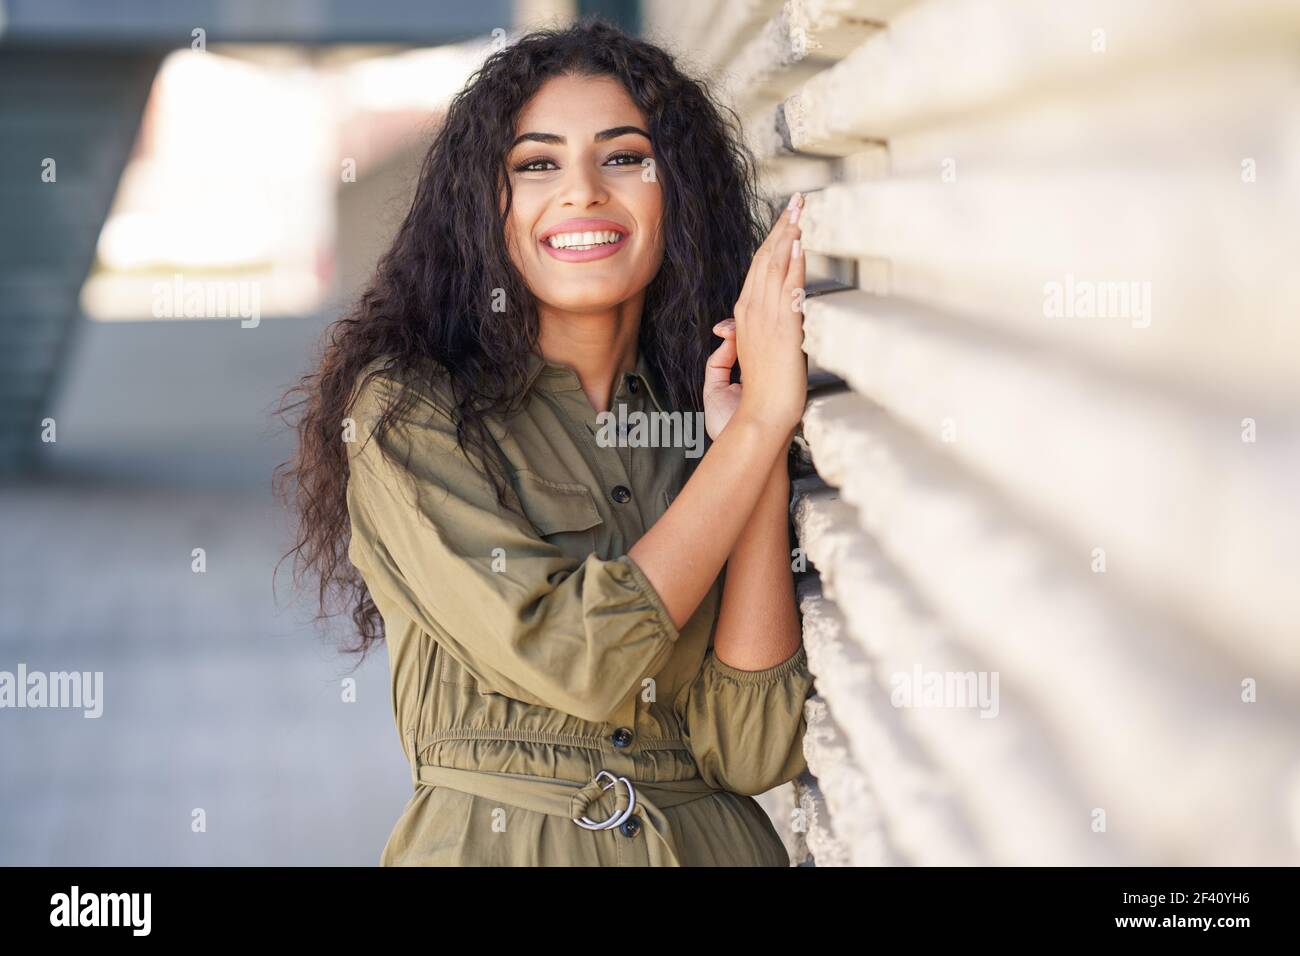 Bonne femme arabe aux cheveux bouclés dans un fond urbain. Jeune femme arabe avec des cheveux bouclés à l'extérieur Banque D'Images